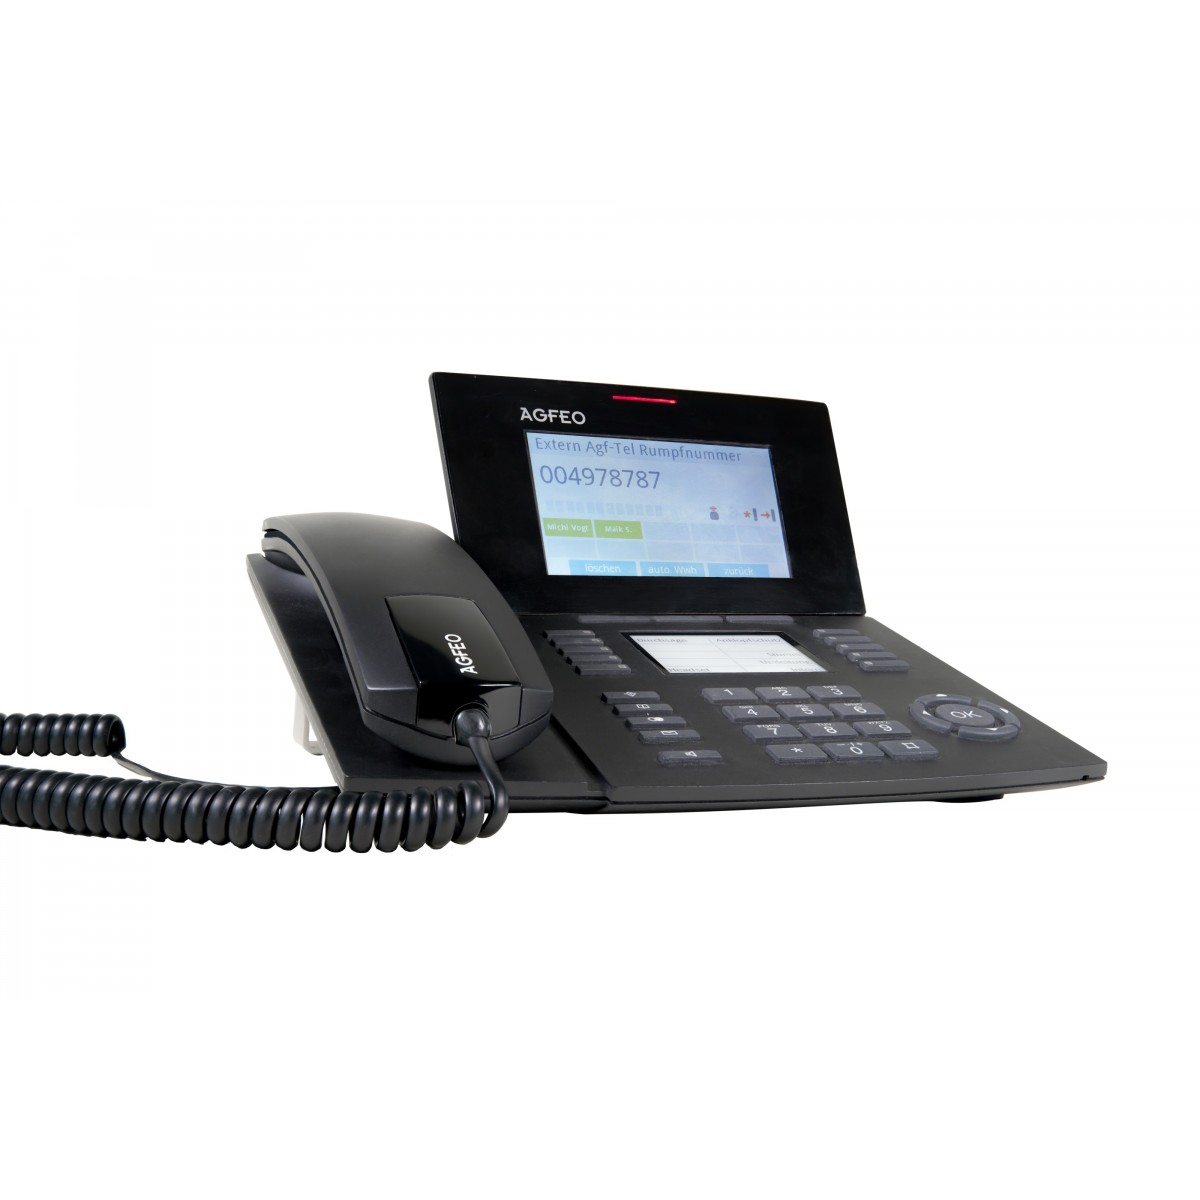 AGFEO ST 56 - IP-Telefon - Schwarz - Kabelgebundenes Mobilteil - 5000 Eintragungen - LCD - Blau